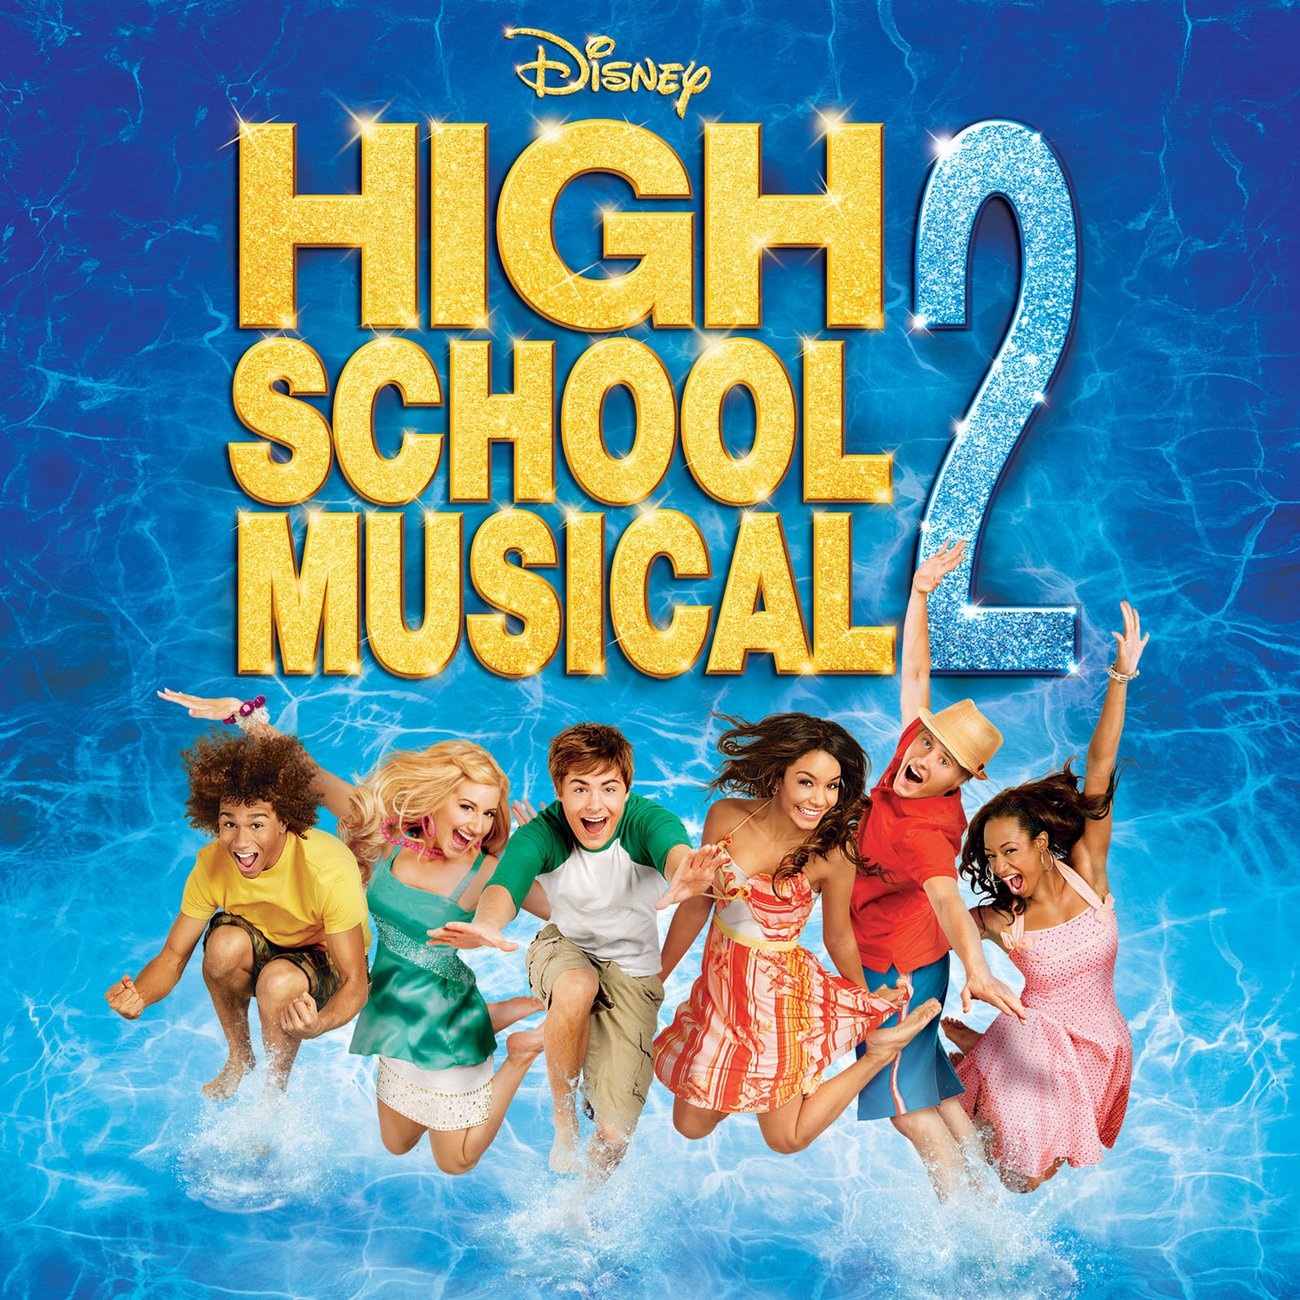 high school musical 2 soundtrack listen